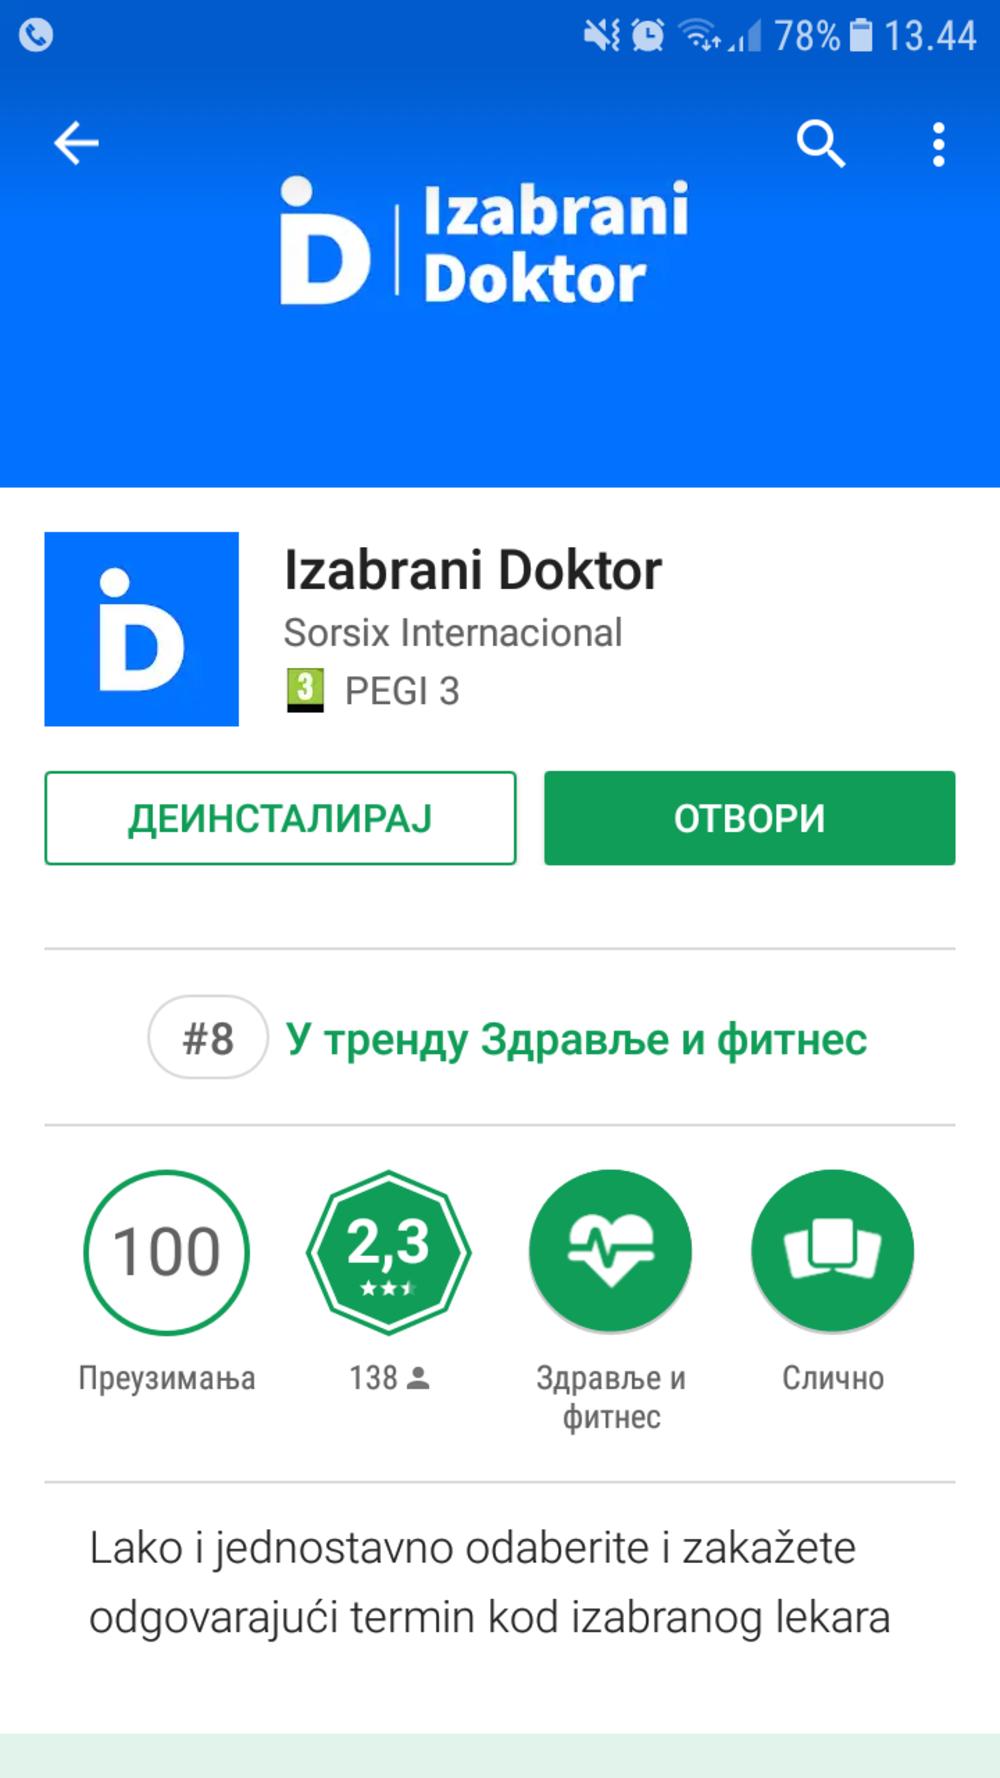 Aplikaciju možete preuzeti sa Google Play Store-a    